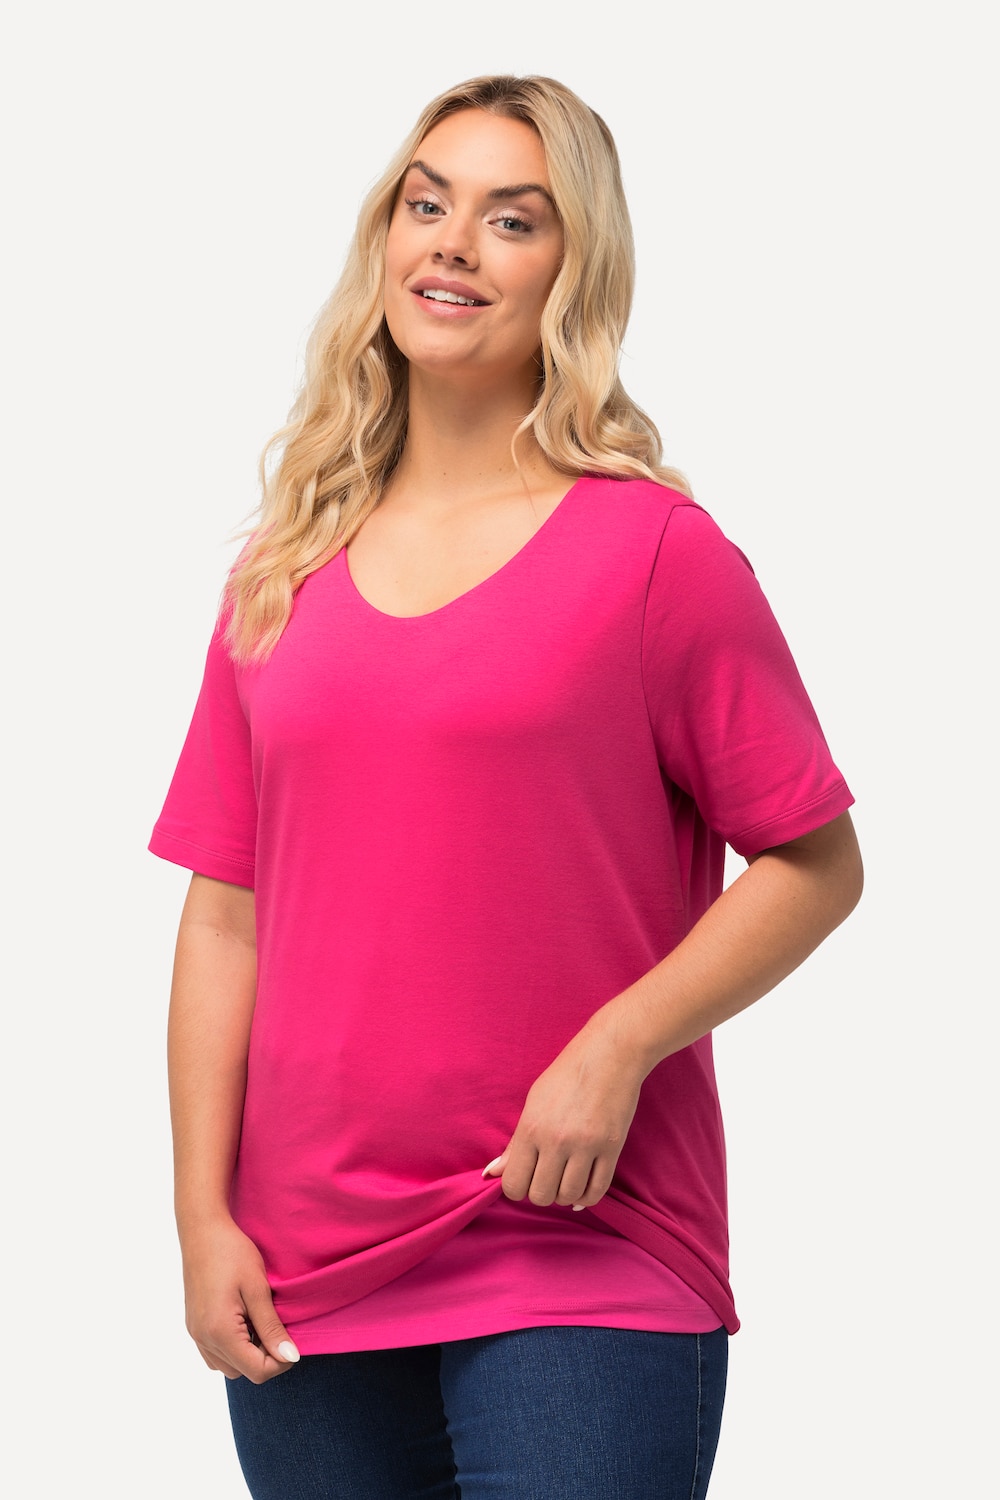 Grote Maten T-shirt, Dames, roze, Maat: 42/44, Katoen, Ulla Popken